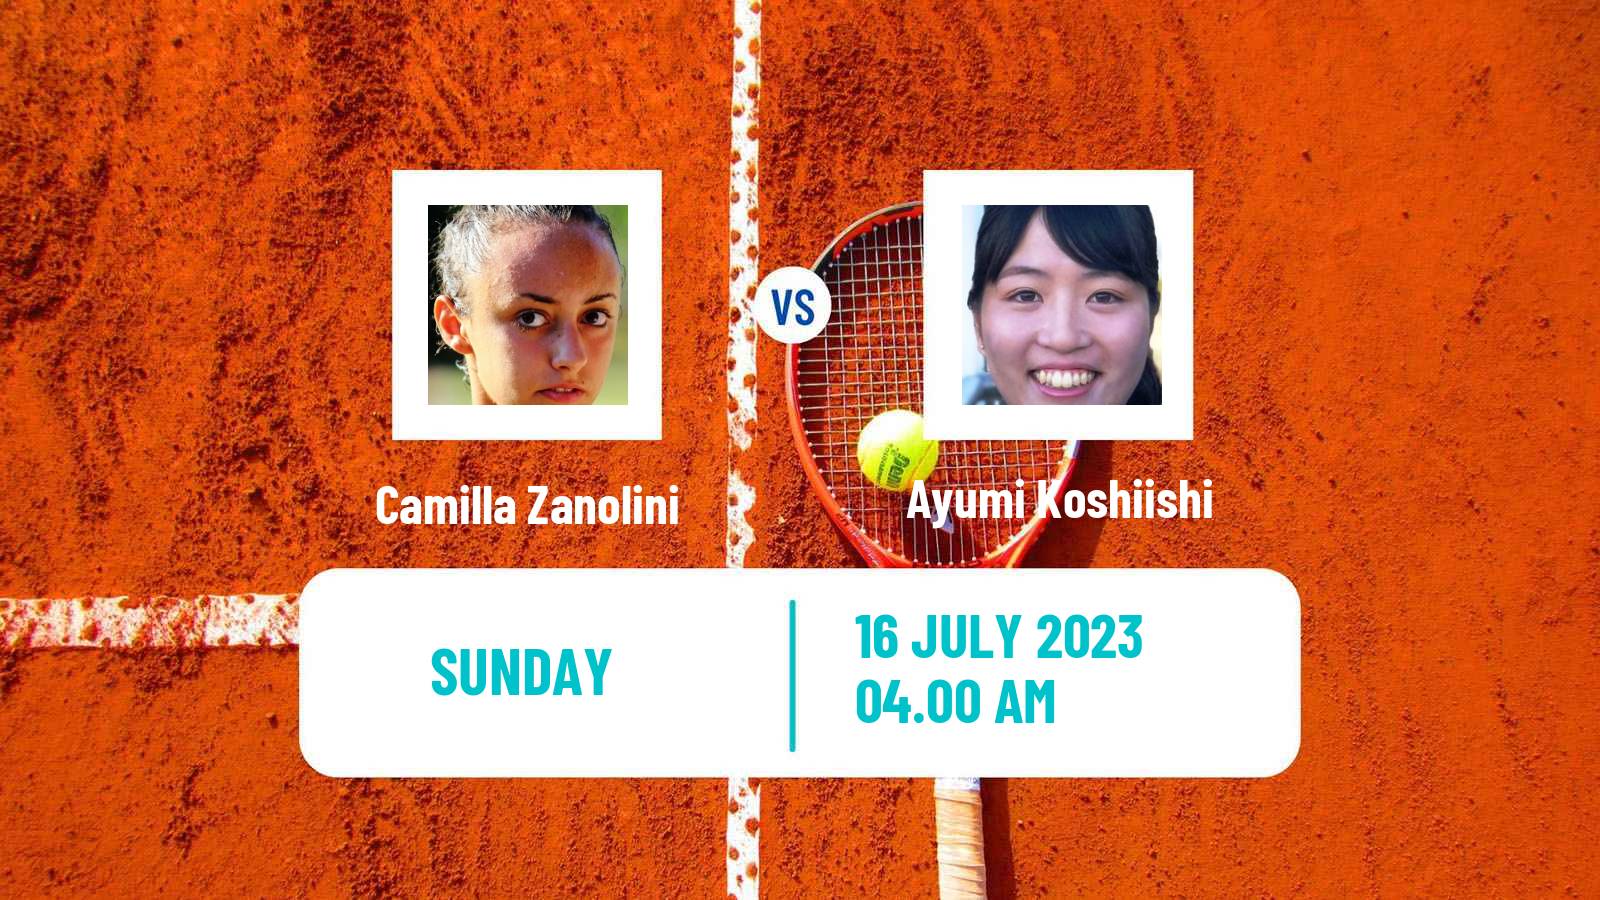 Tennis ITF W15 Monastir 23 Women Camilla Zanolini - Ayumi Koshiishi